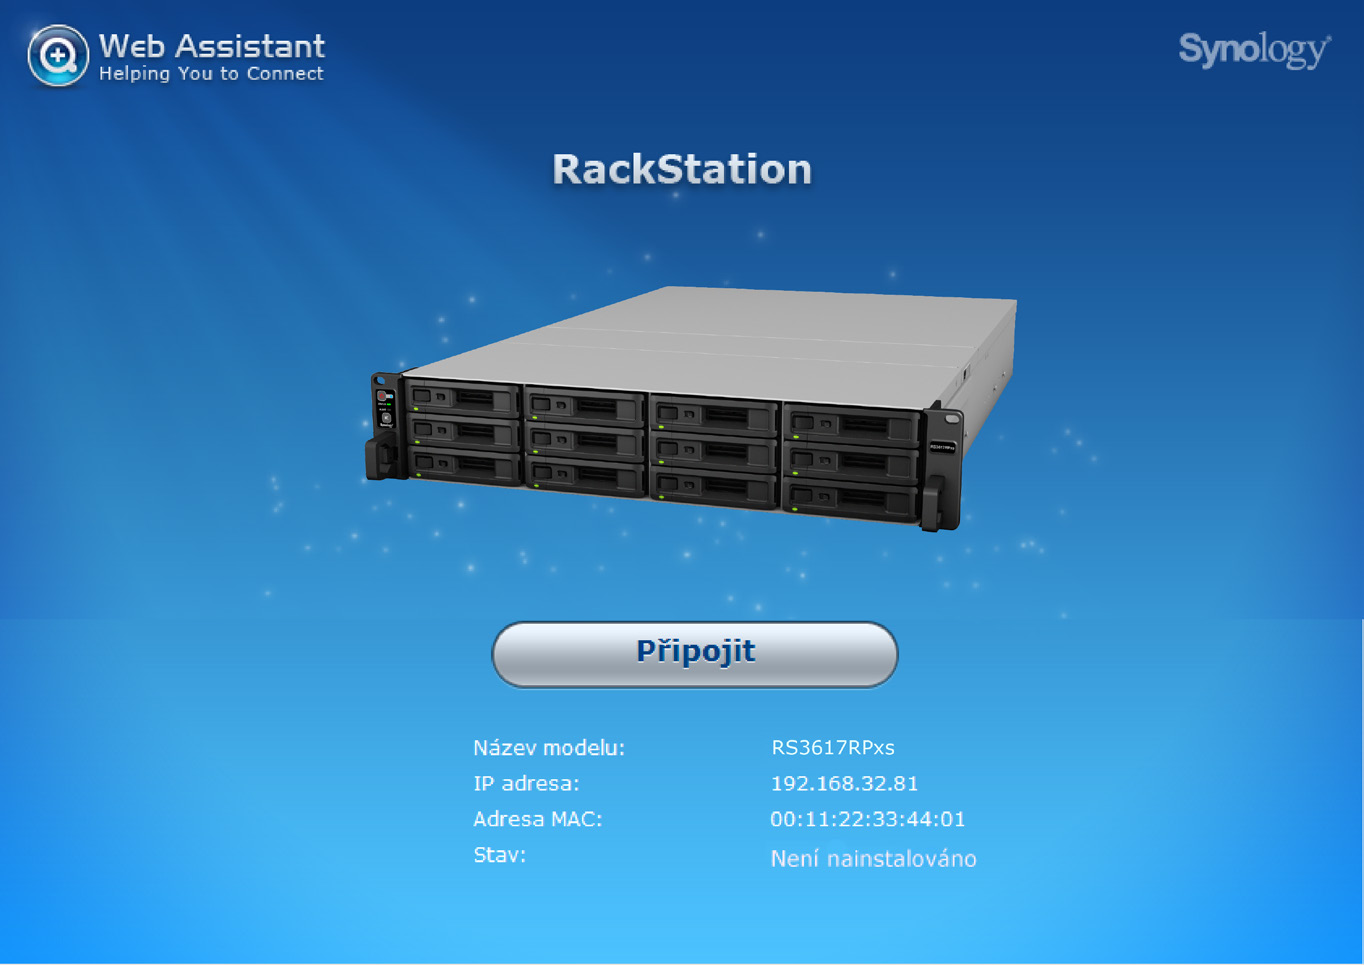 Kapitola 3 Instalace systému DSM na zařízení RackStation Po dokončení nastavení hardwaru nainstalujte na zařízení RackStation systém DiskStation Manager (DSM) jedná se o operační systém společnosti